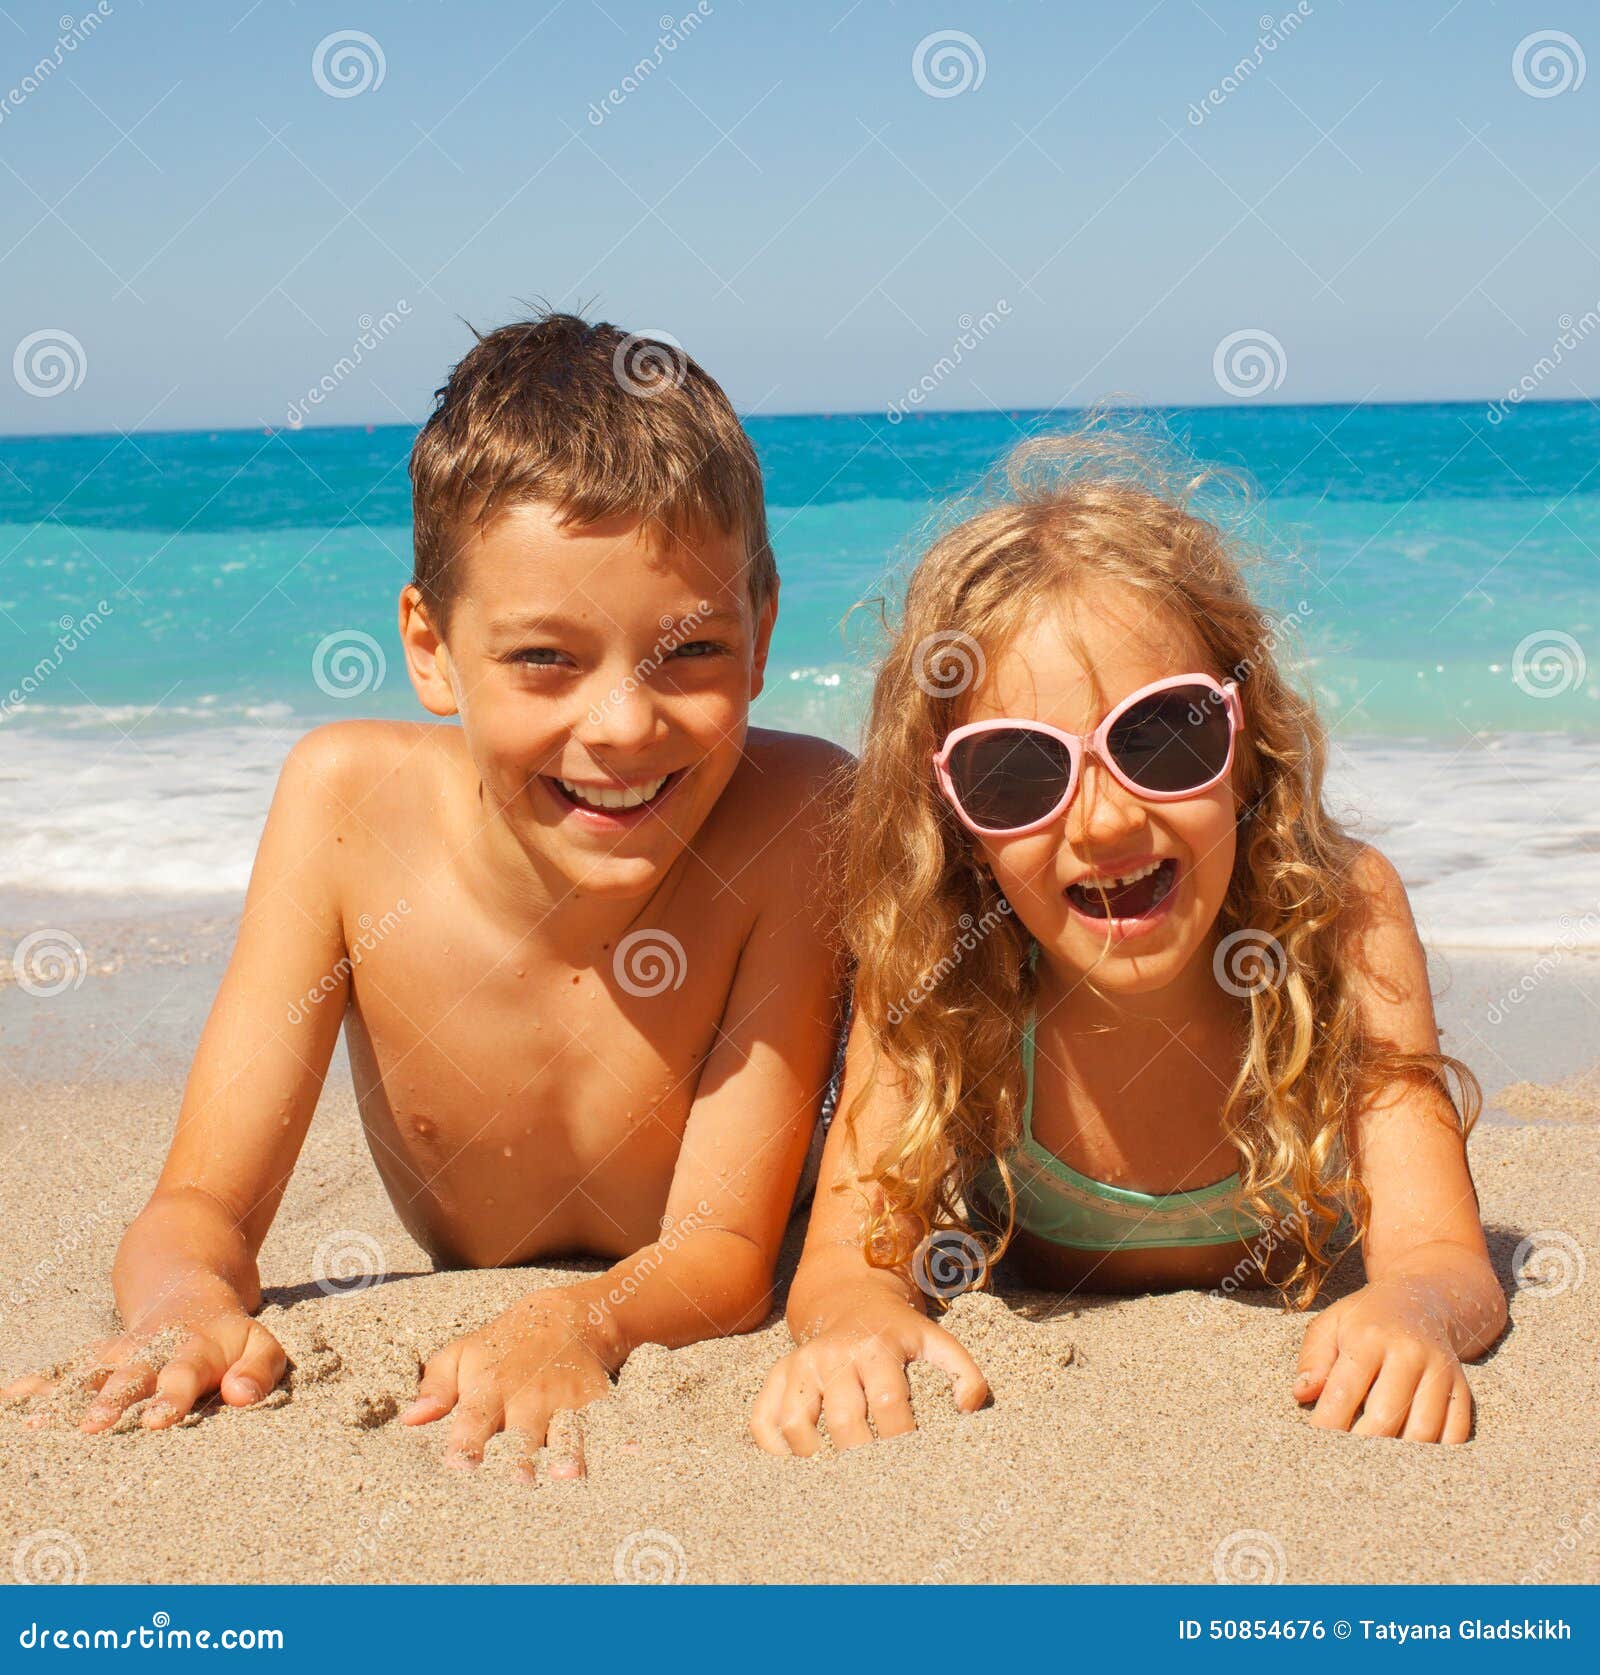 нудистский пляж с голыми детьми фото 14